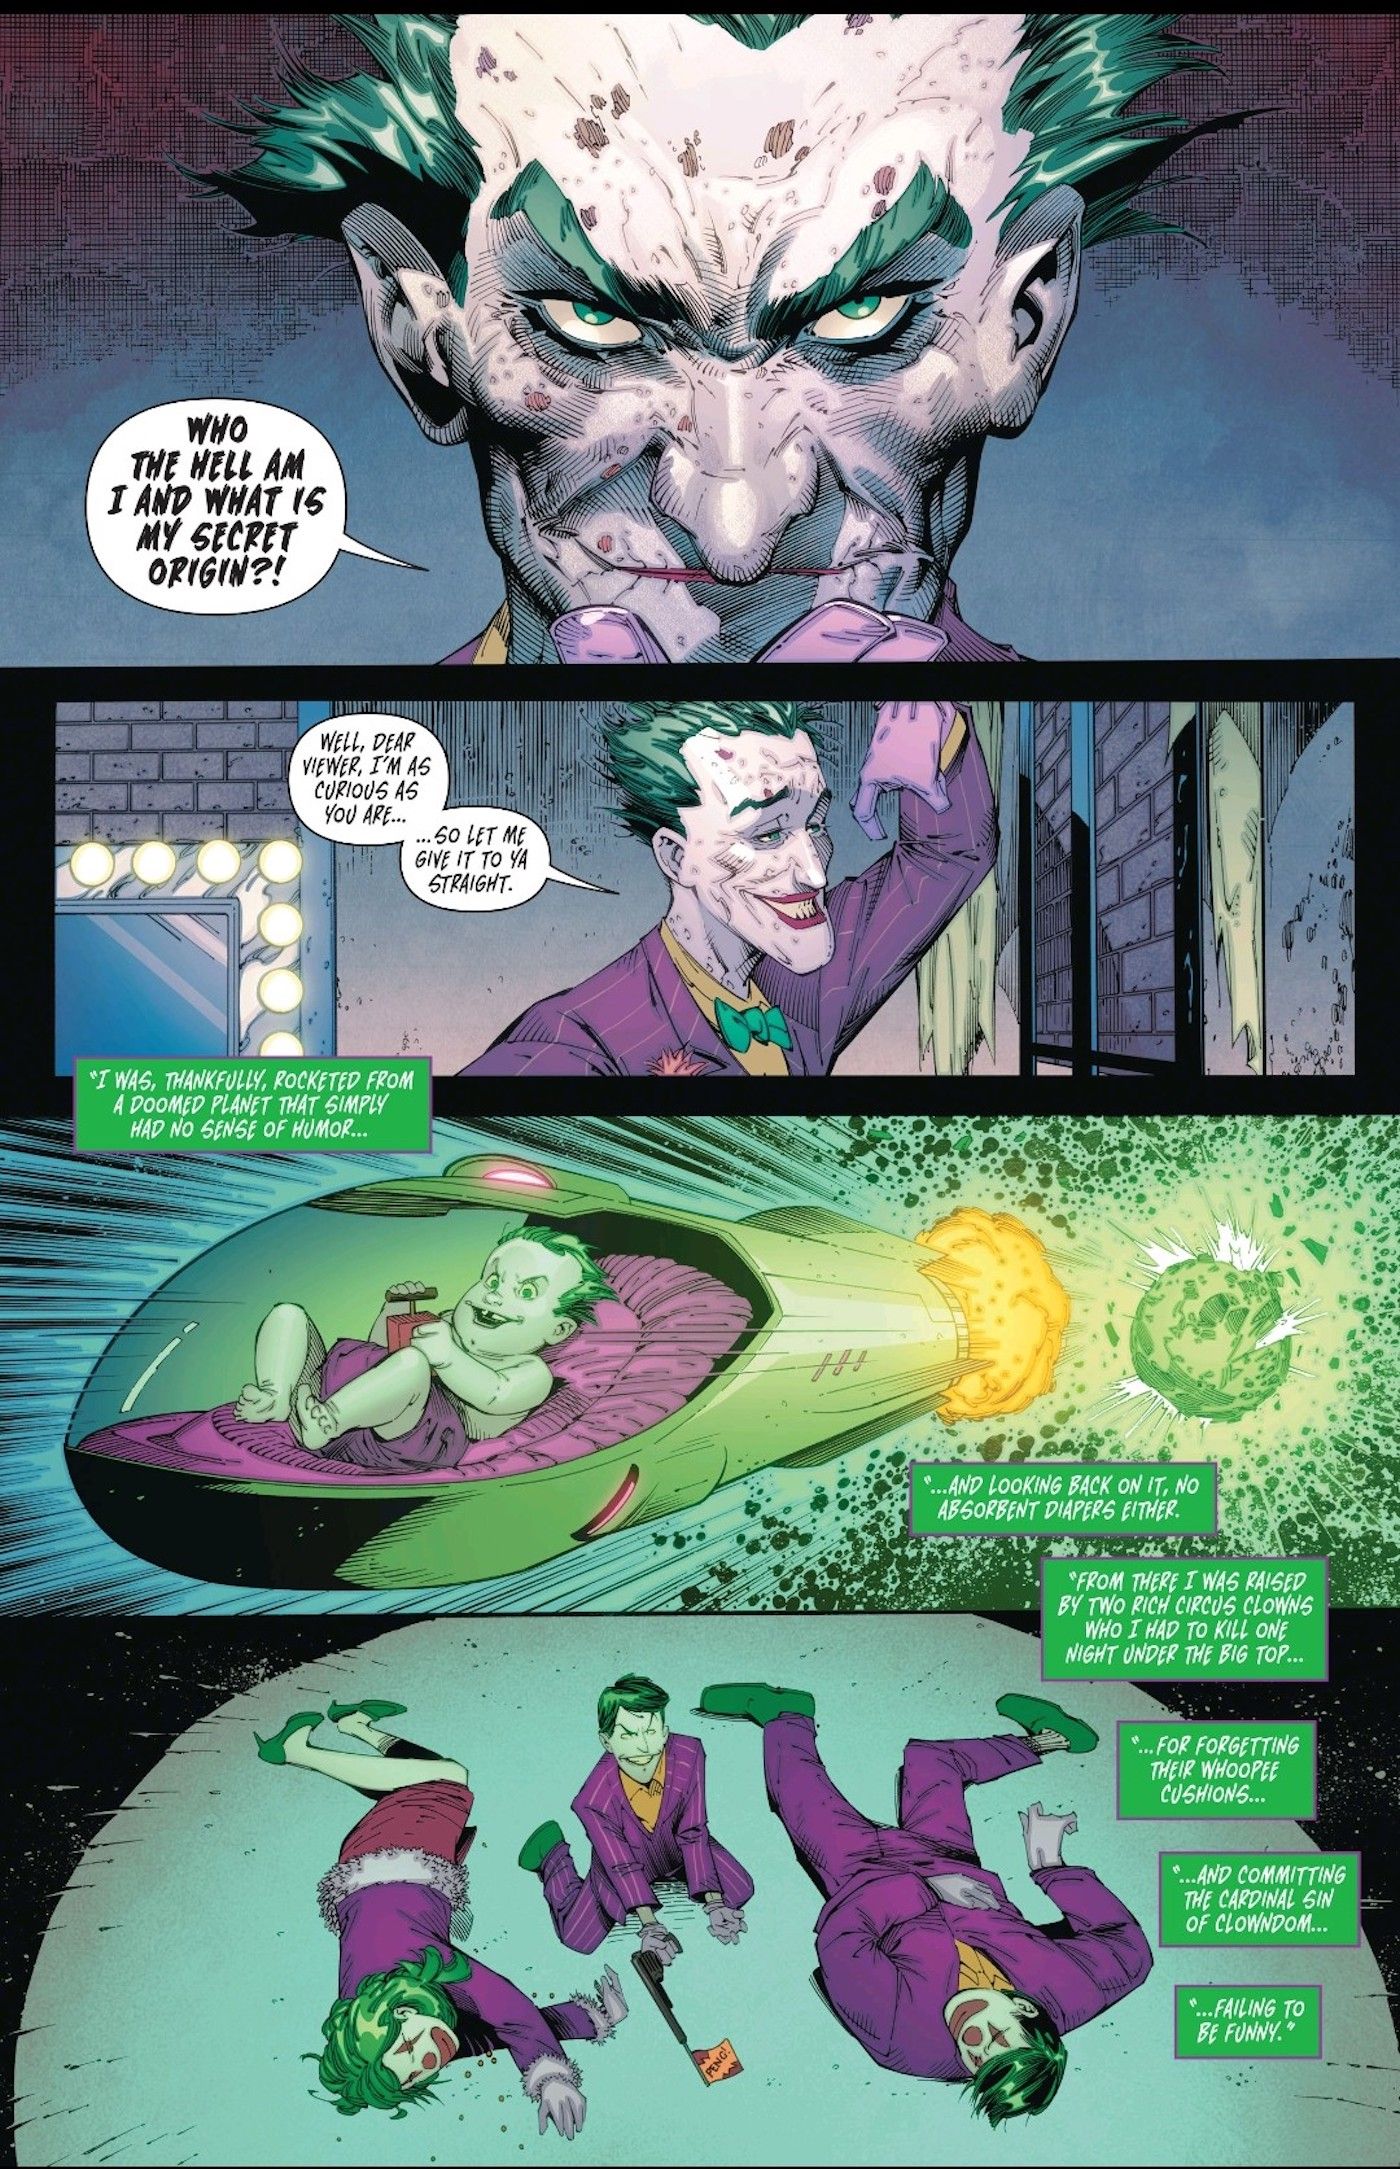 Joker’s Weirdest Origin Made Him A Clown Superman